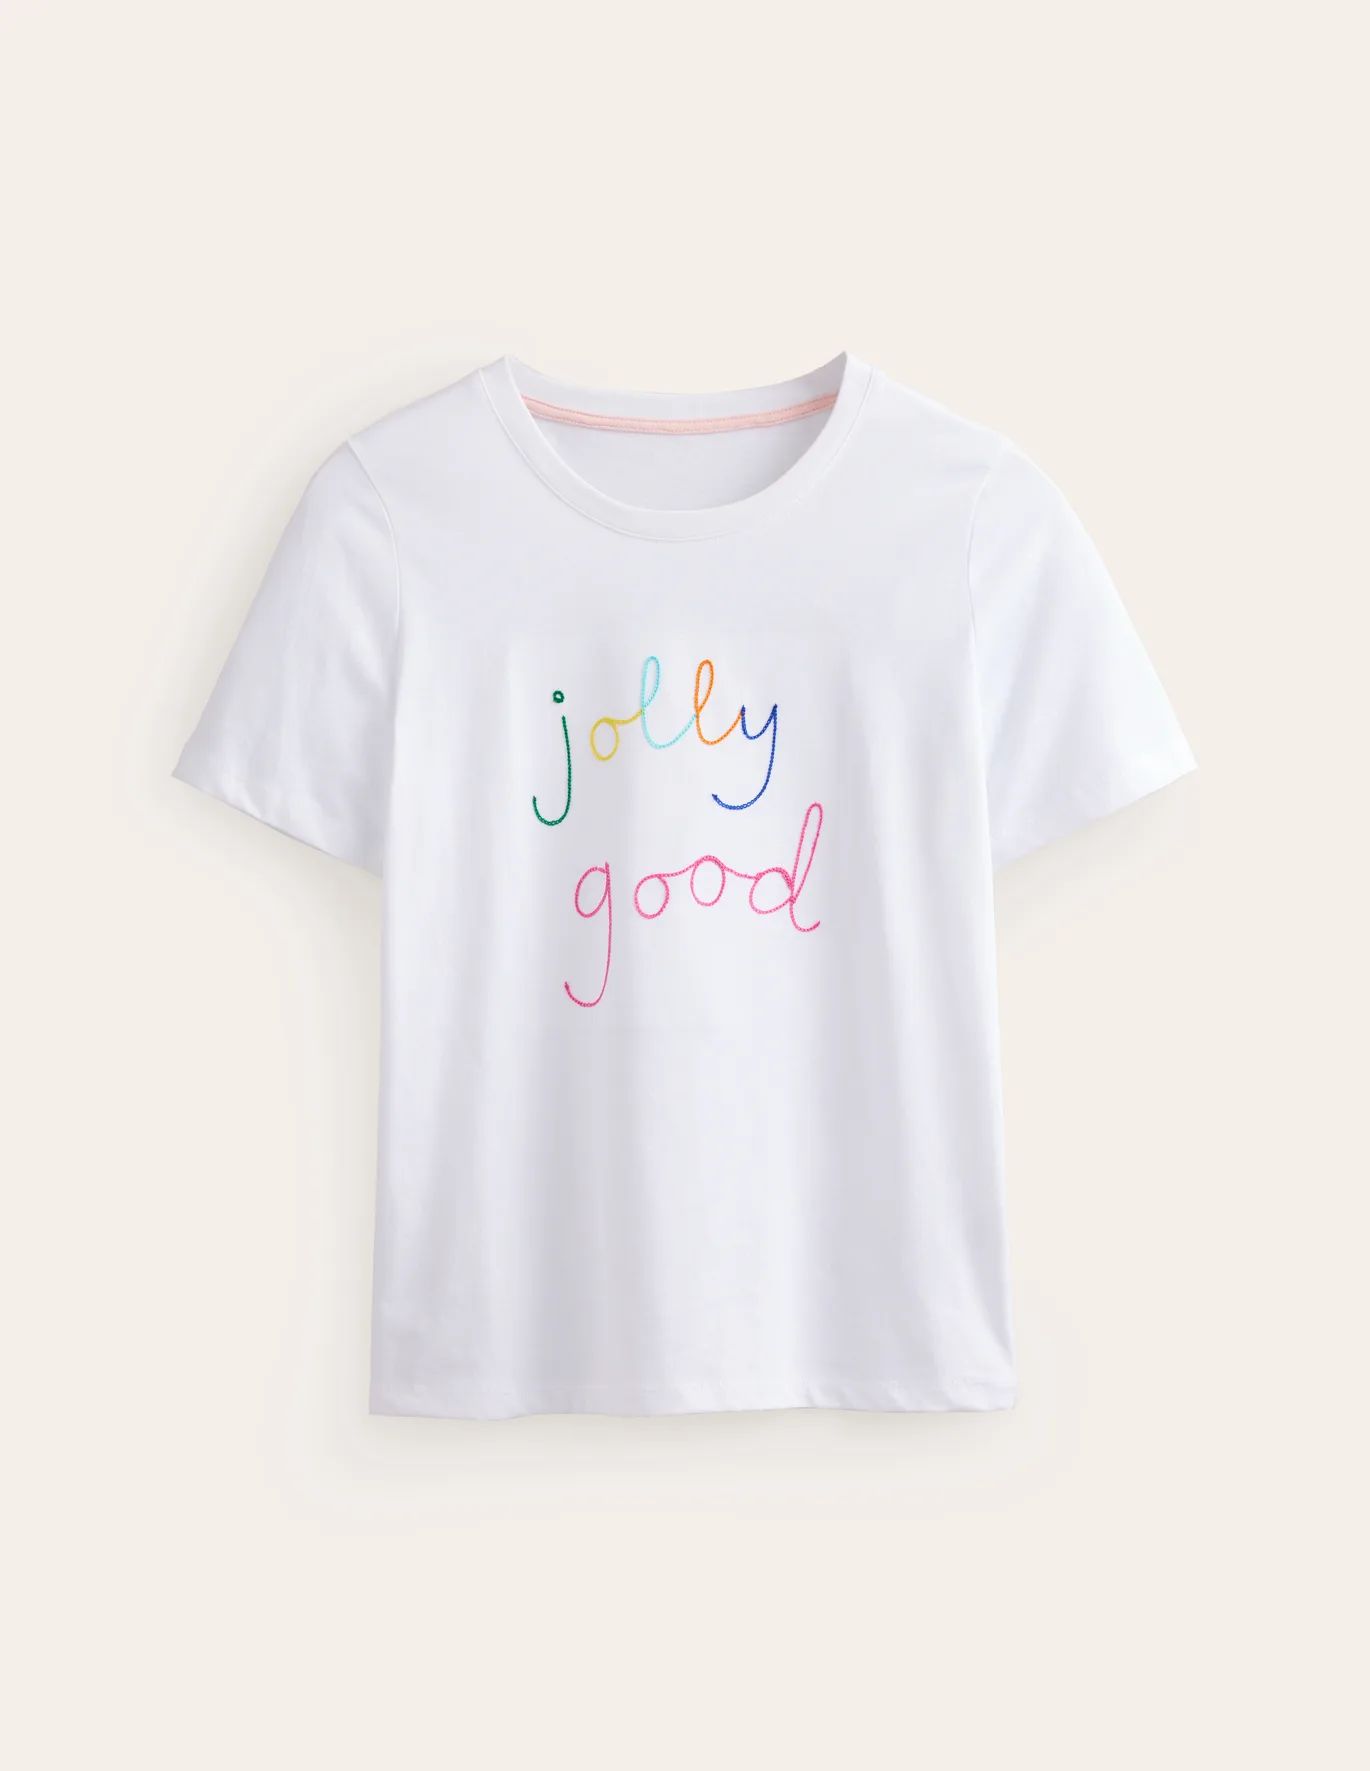 Jolly Good | Boden (US)